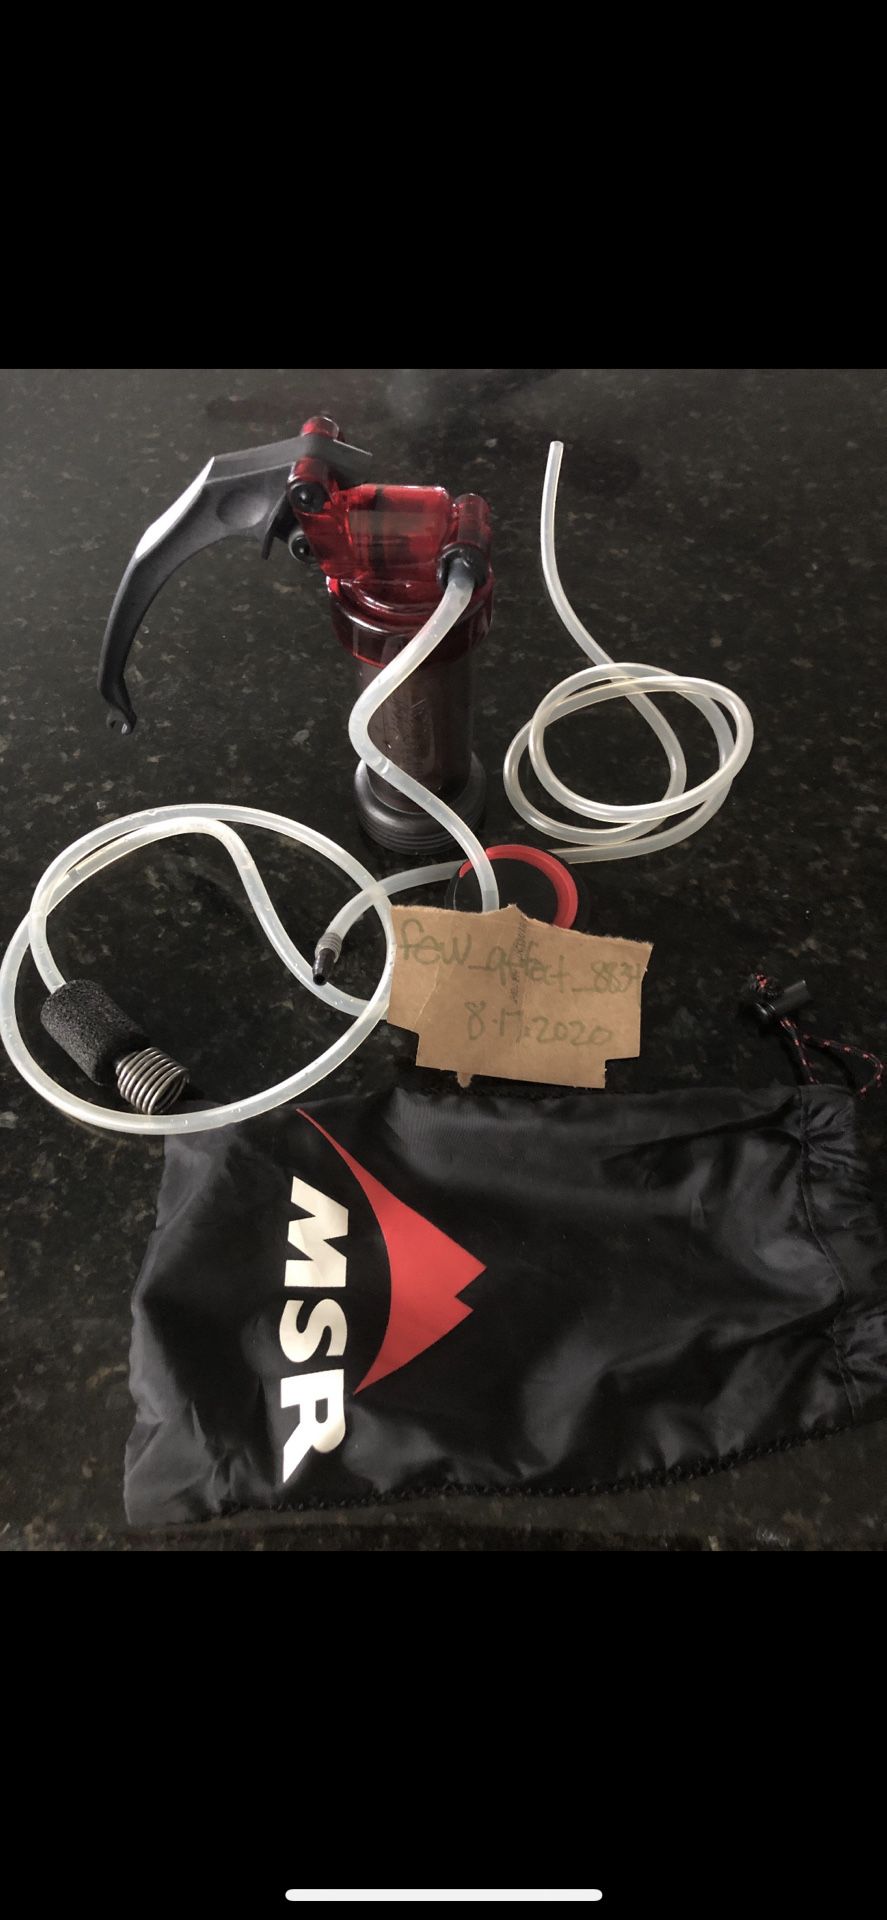 Msr miniworks water filter backpacking